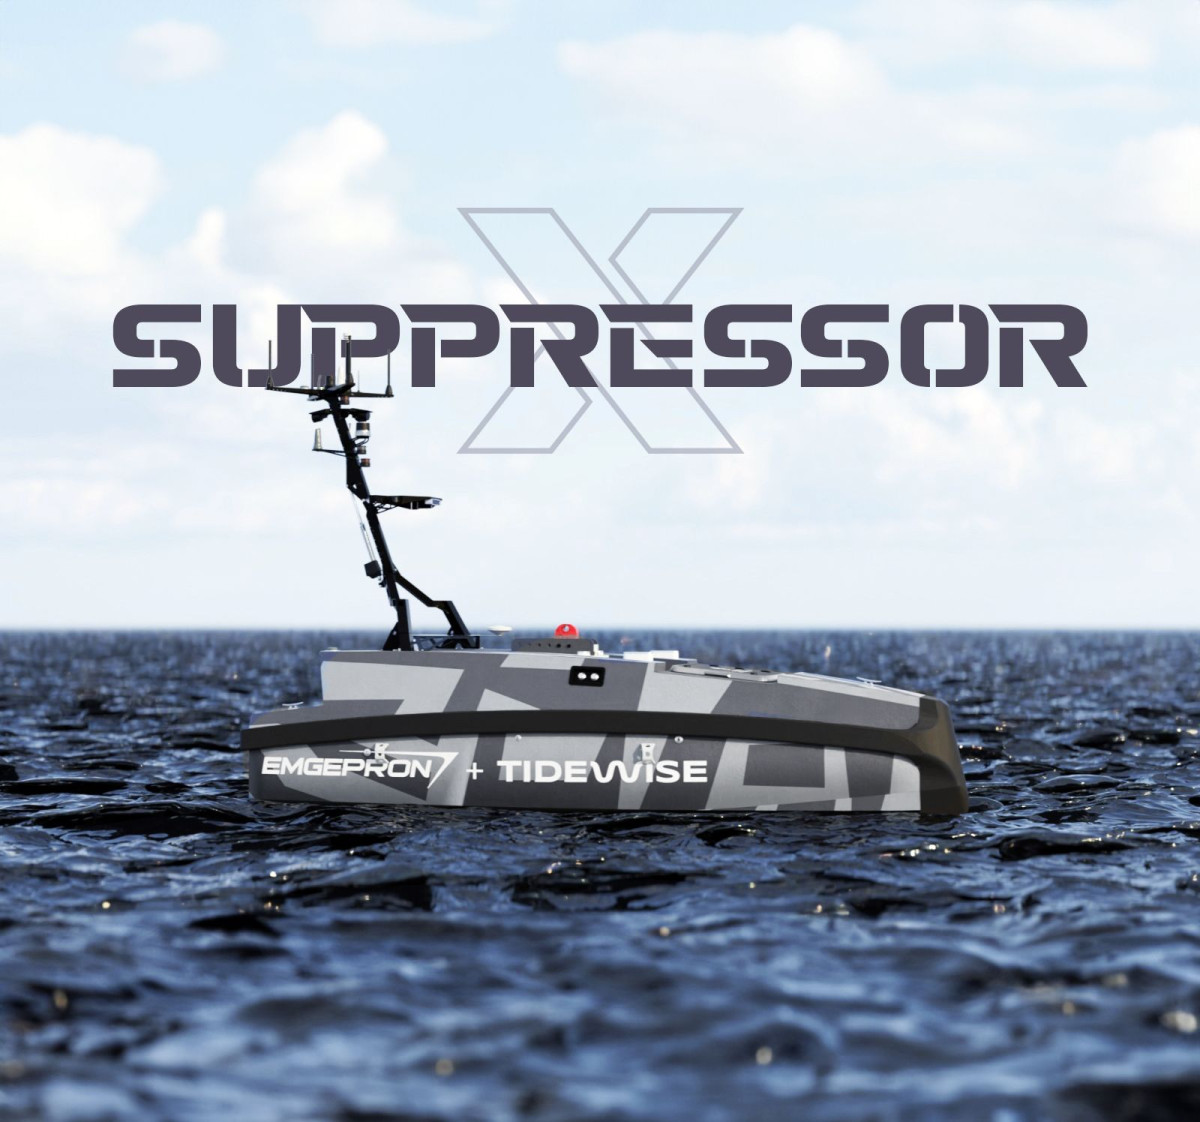 Supressorx1